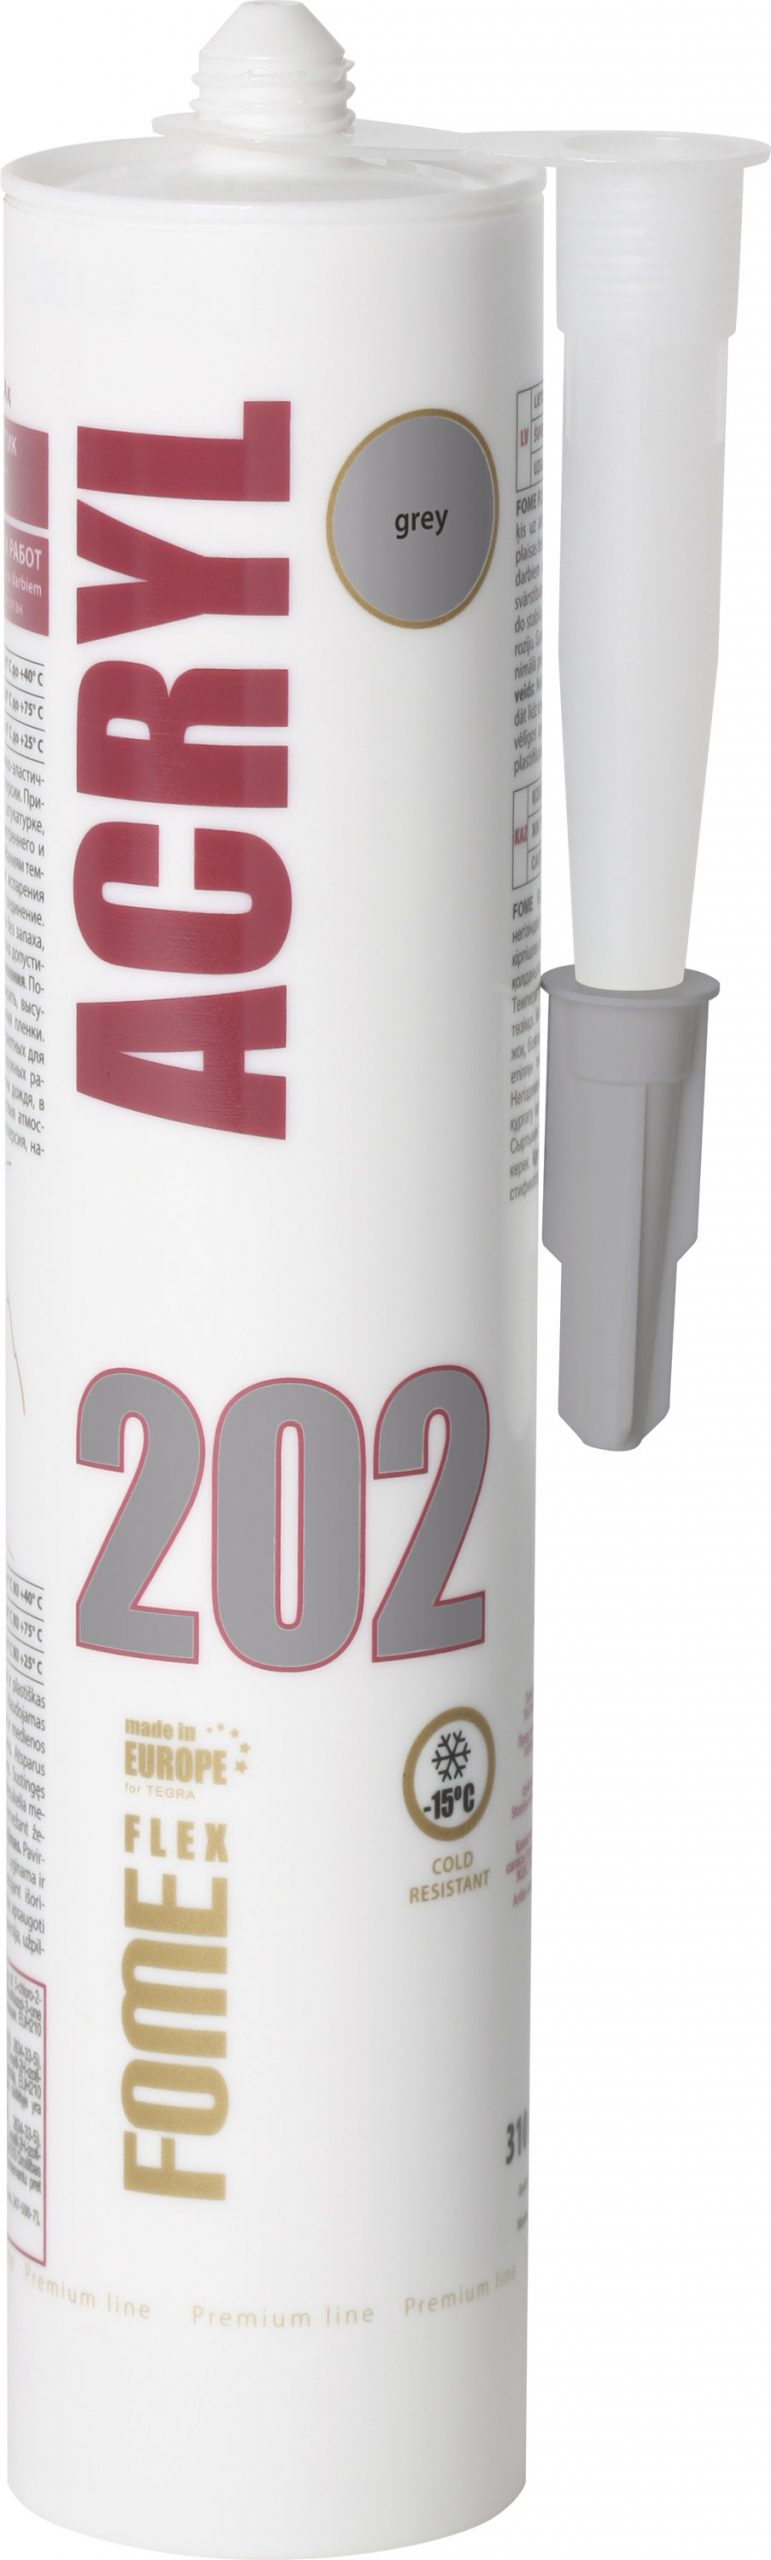 ACRYL 202 acrylic sealant, grey